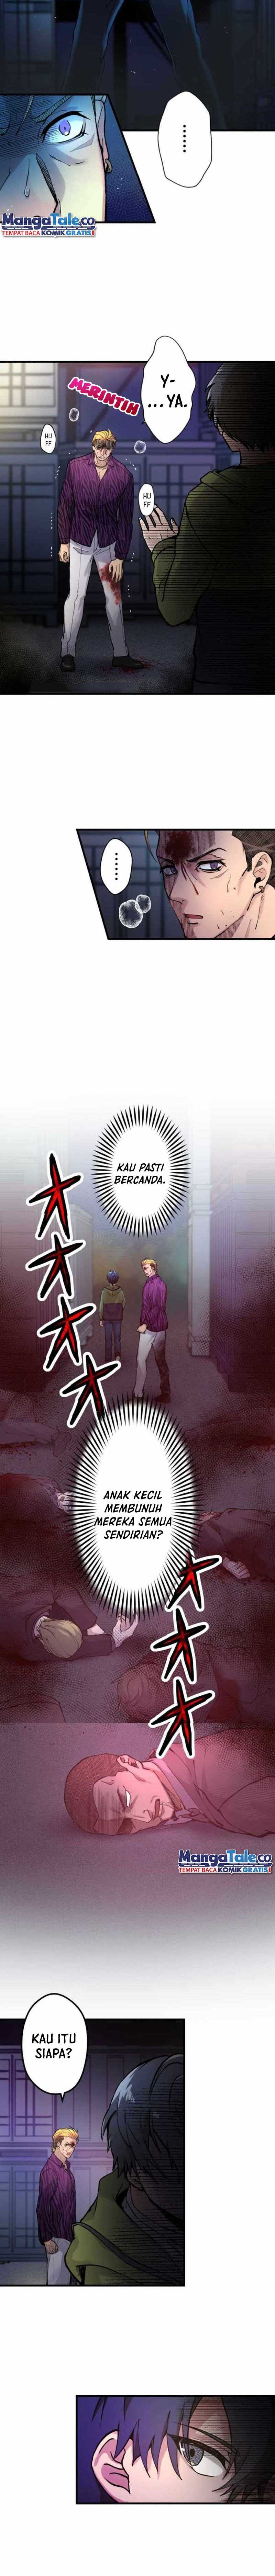 Yakuza Cleaner Chapter 1